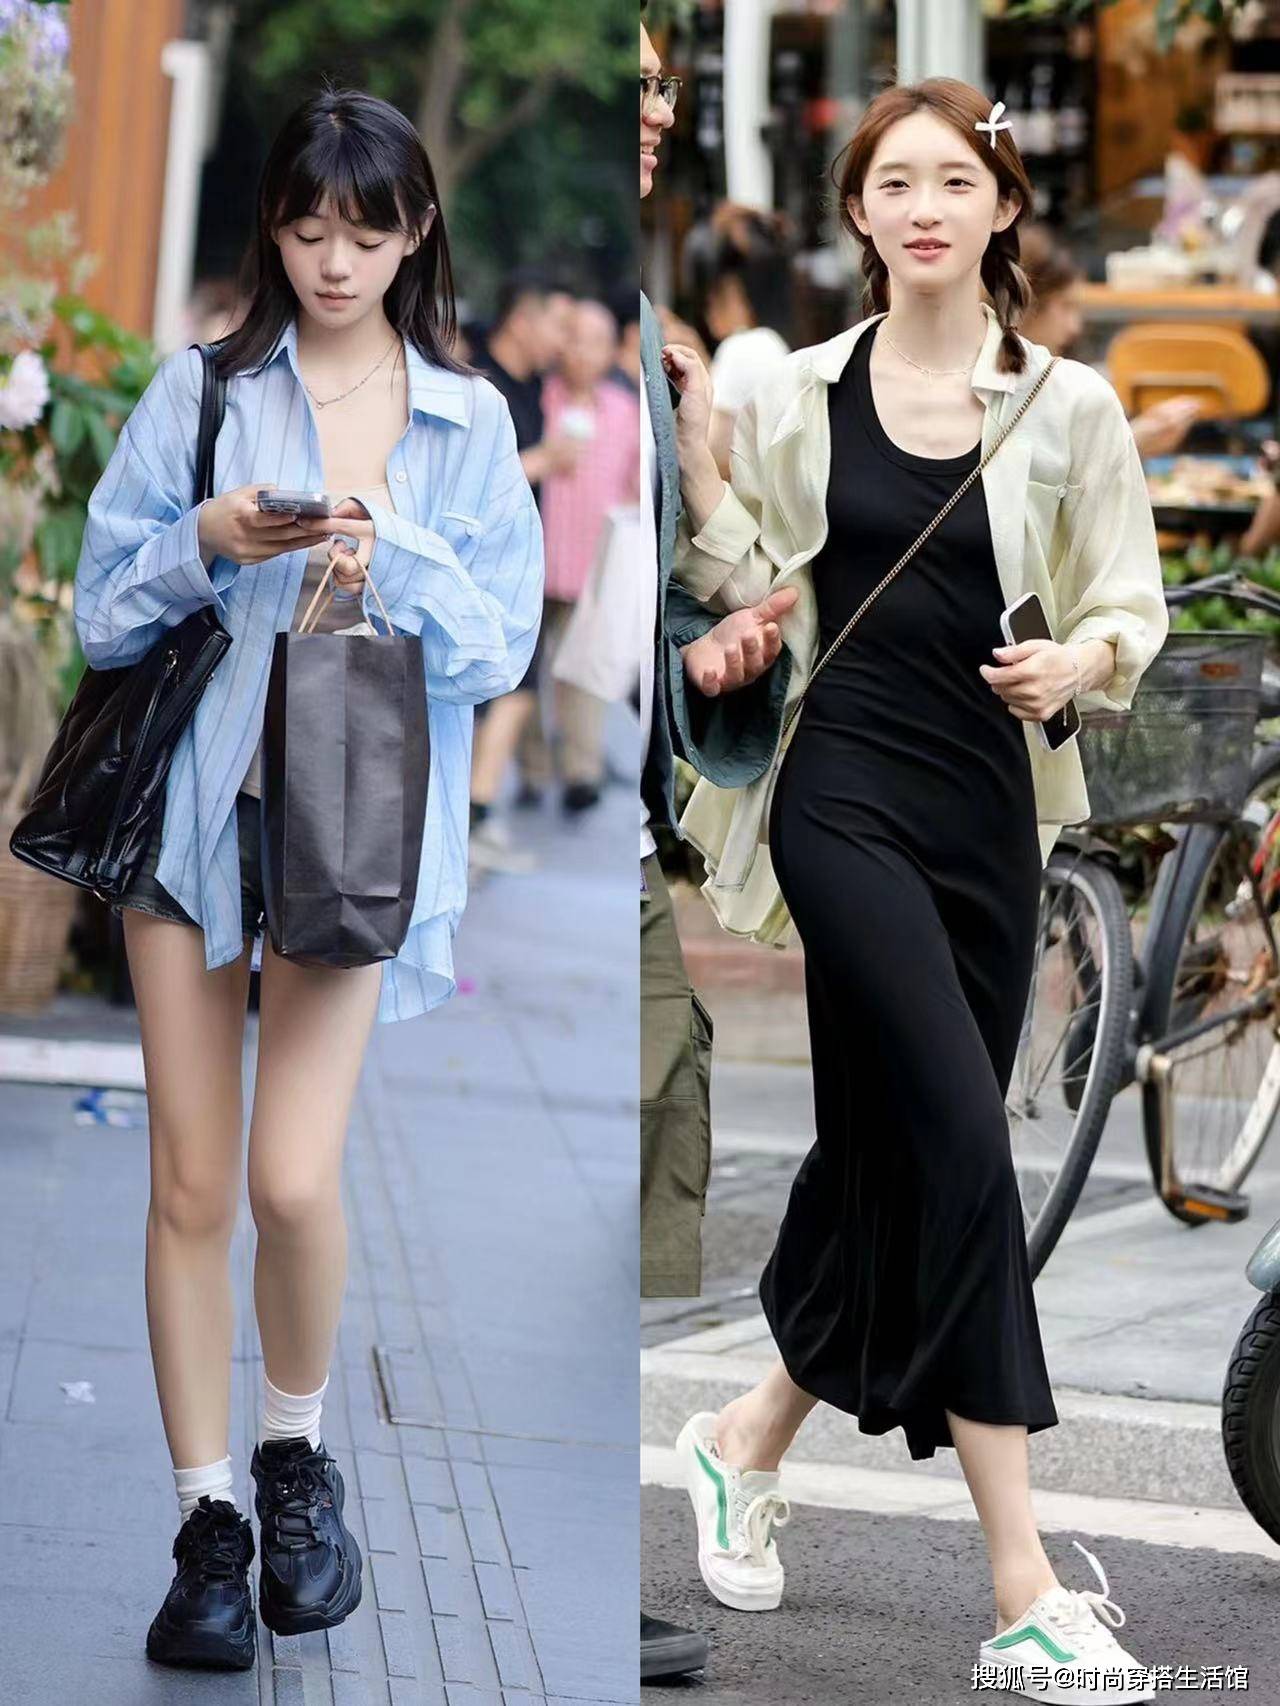 衬衫里面不要穿裤子，太土了！你看上海姑娘:穿成这样很时髦很时尚。